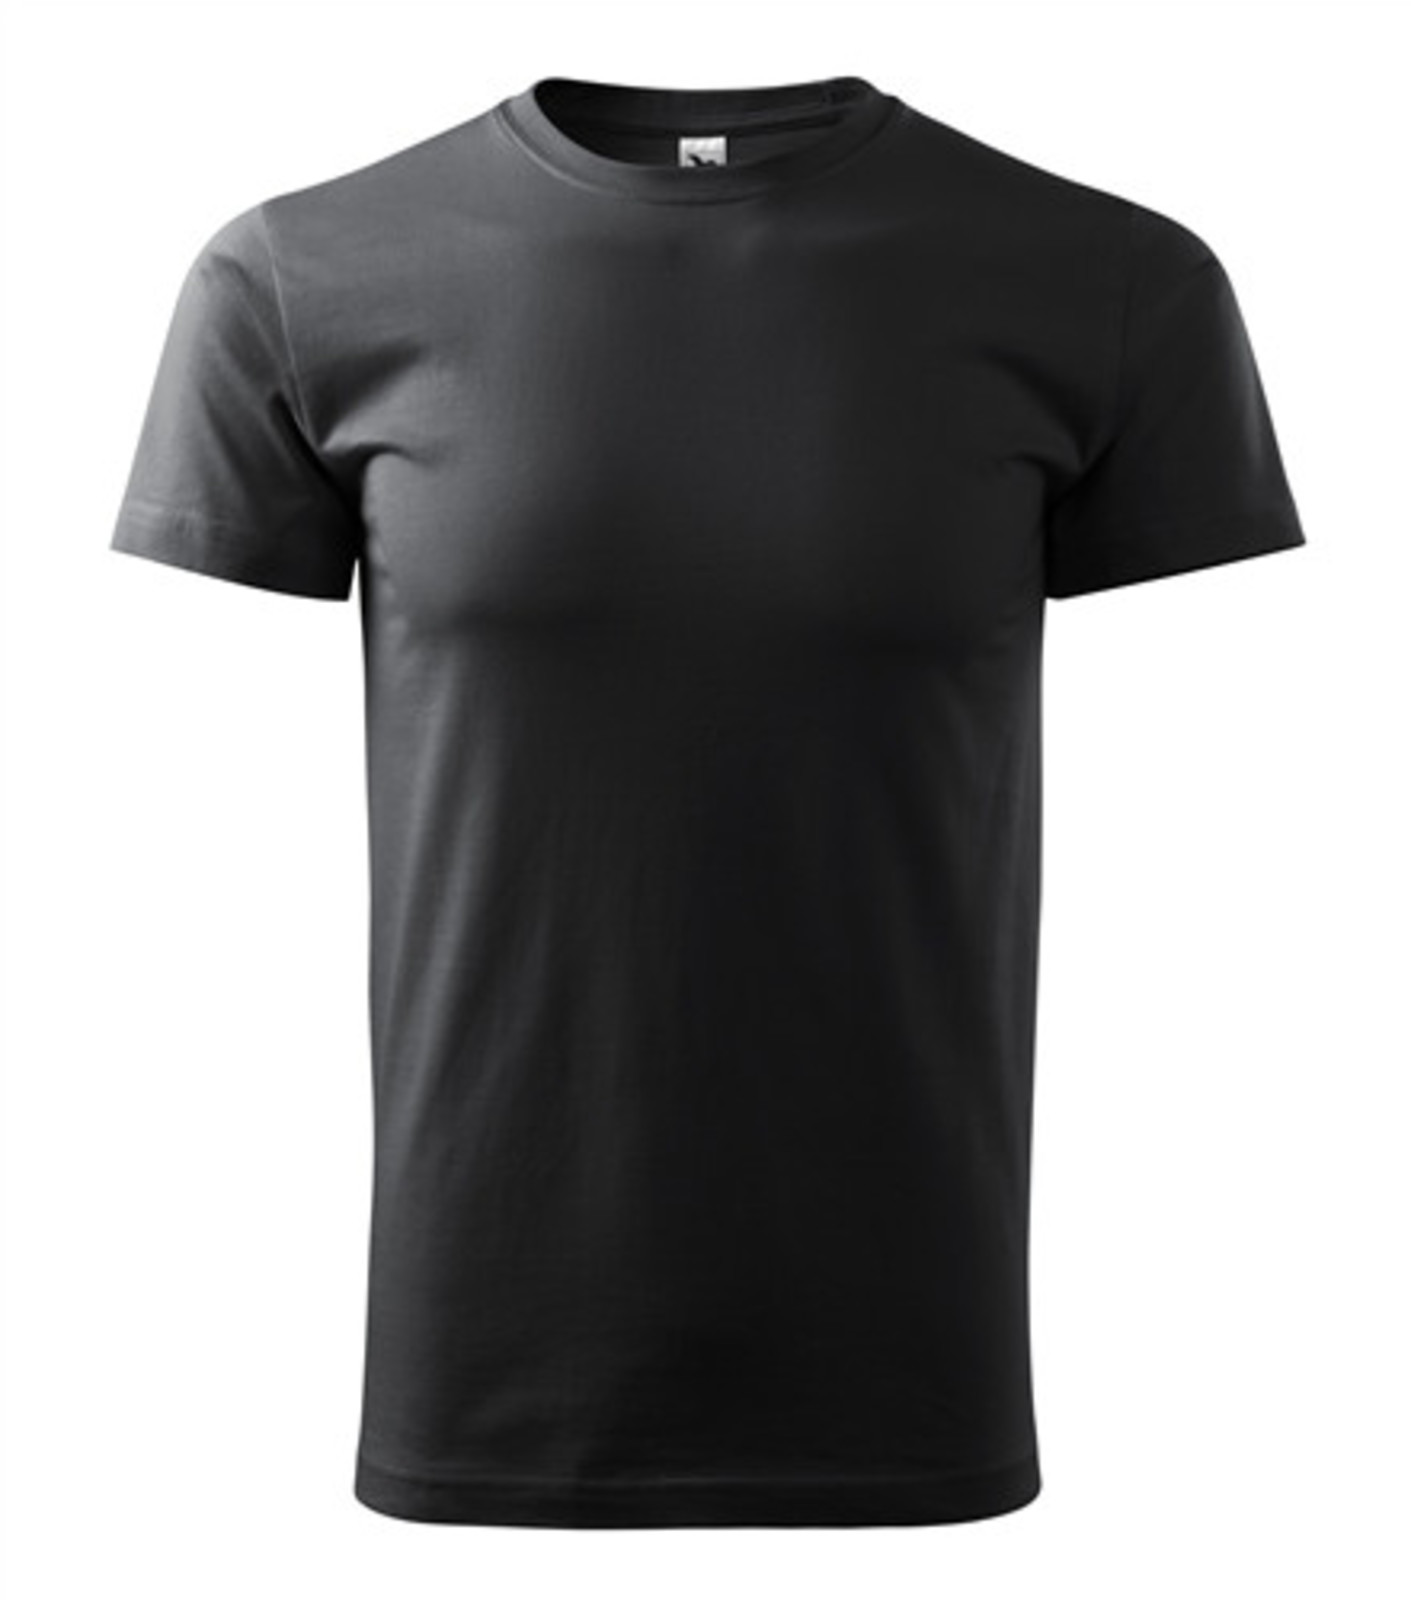 Pánske tričko Malfini Basic 129 - veľkosť: M, farba: šedá ebony